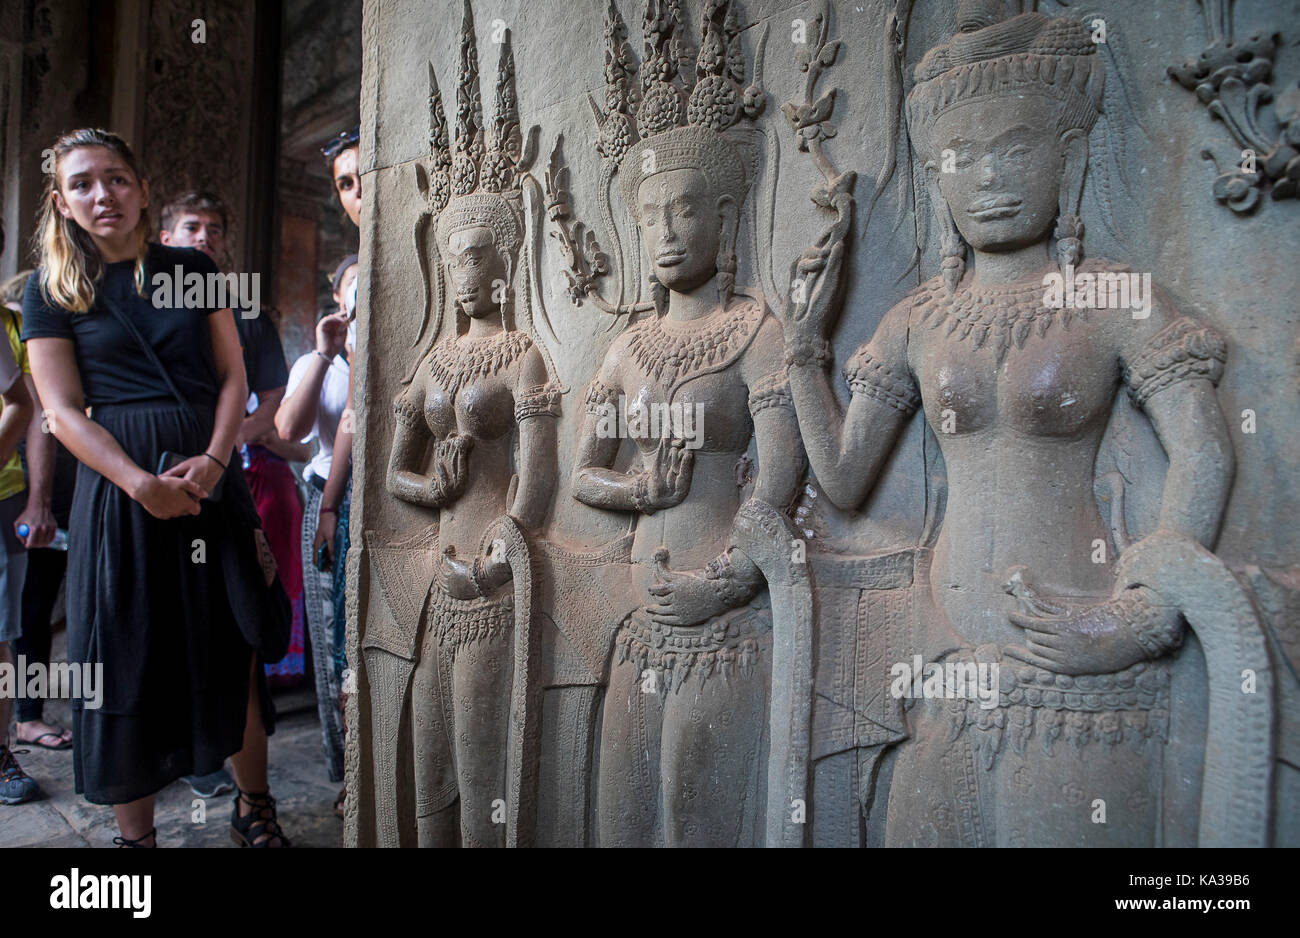 Touristes, et sculptures d'Apsara dans le bas-relief sur le mur, à Angkor Wat, Siem Reap, Cambodge Banque D'Images